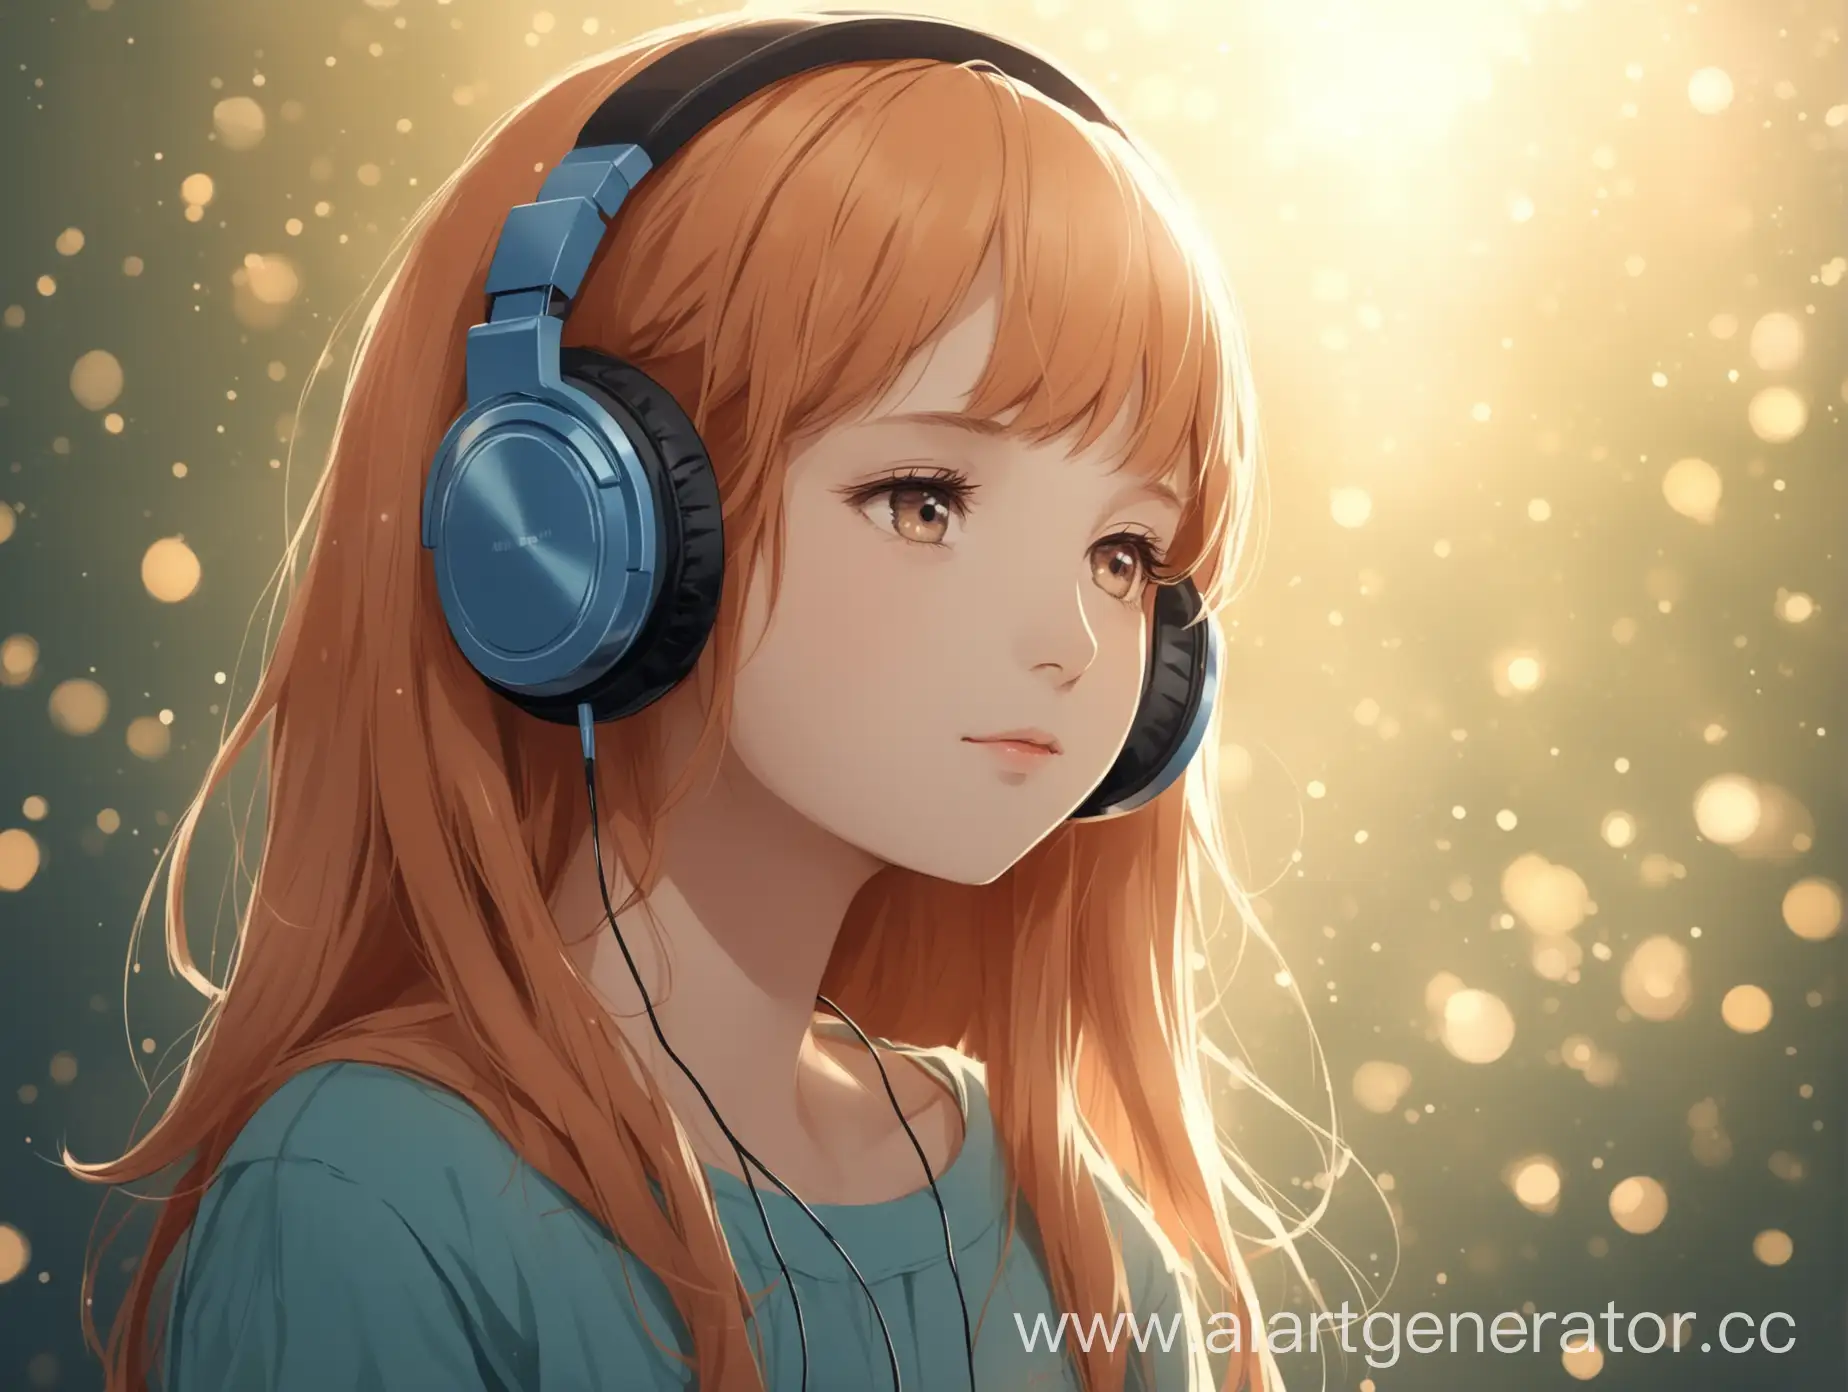 Young-Girl-Enjoying-Music-with-Headphones